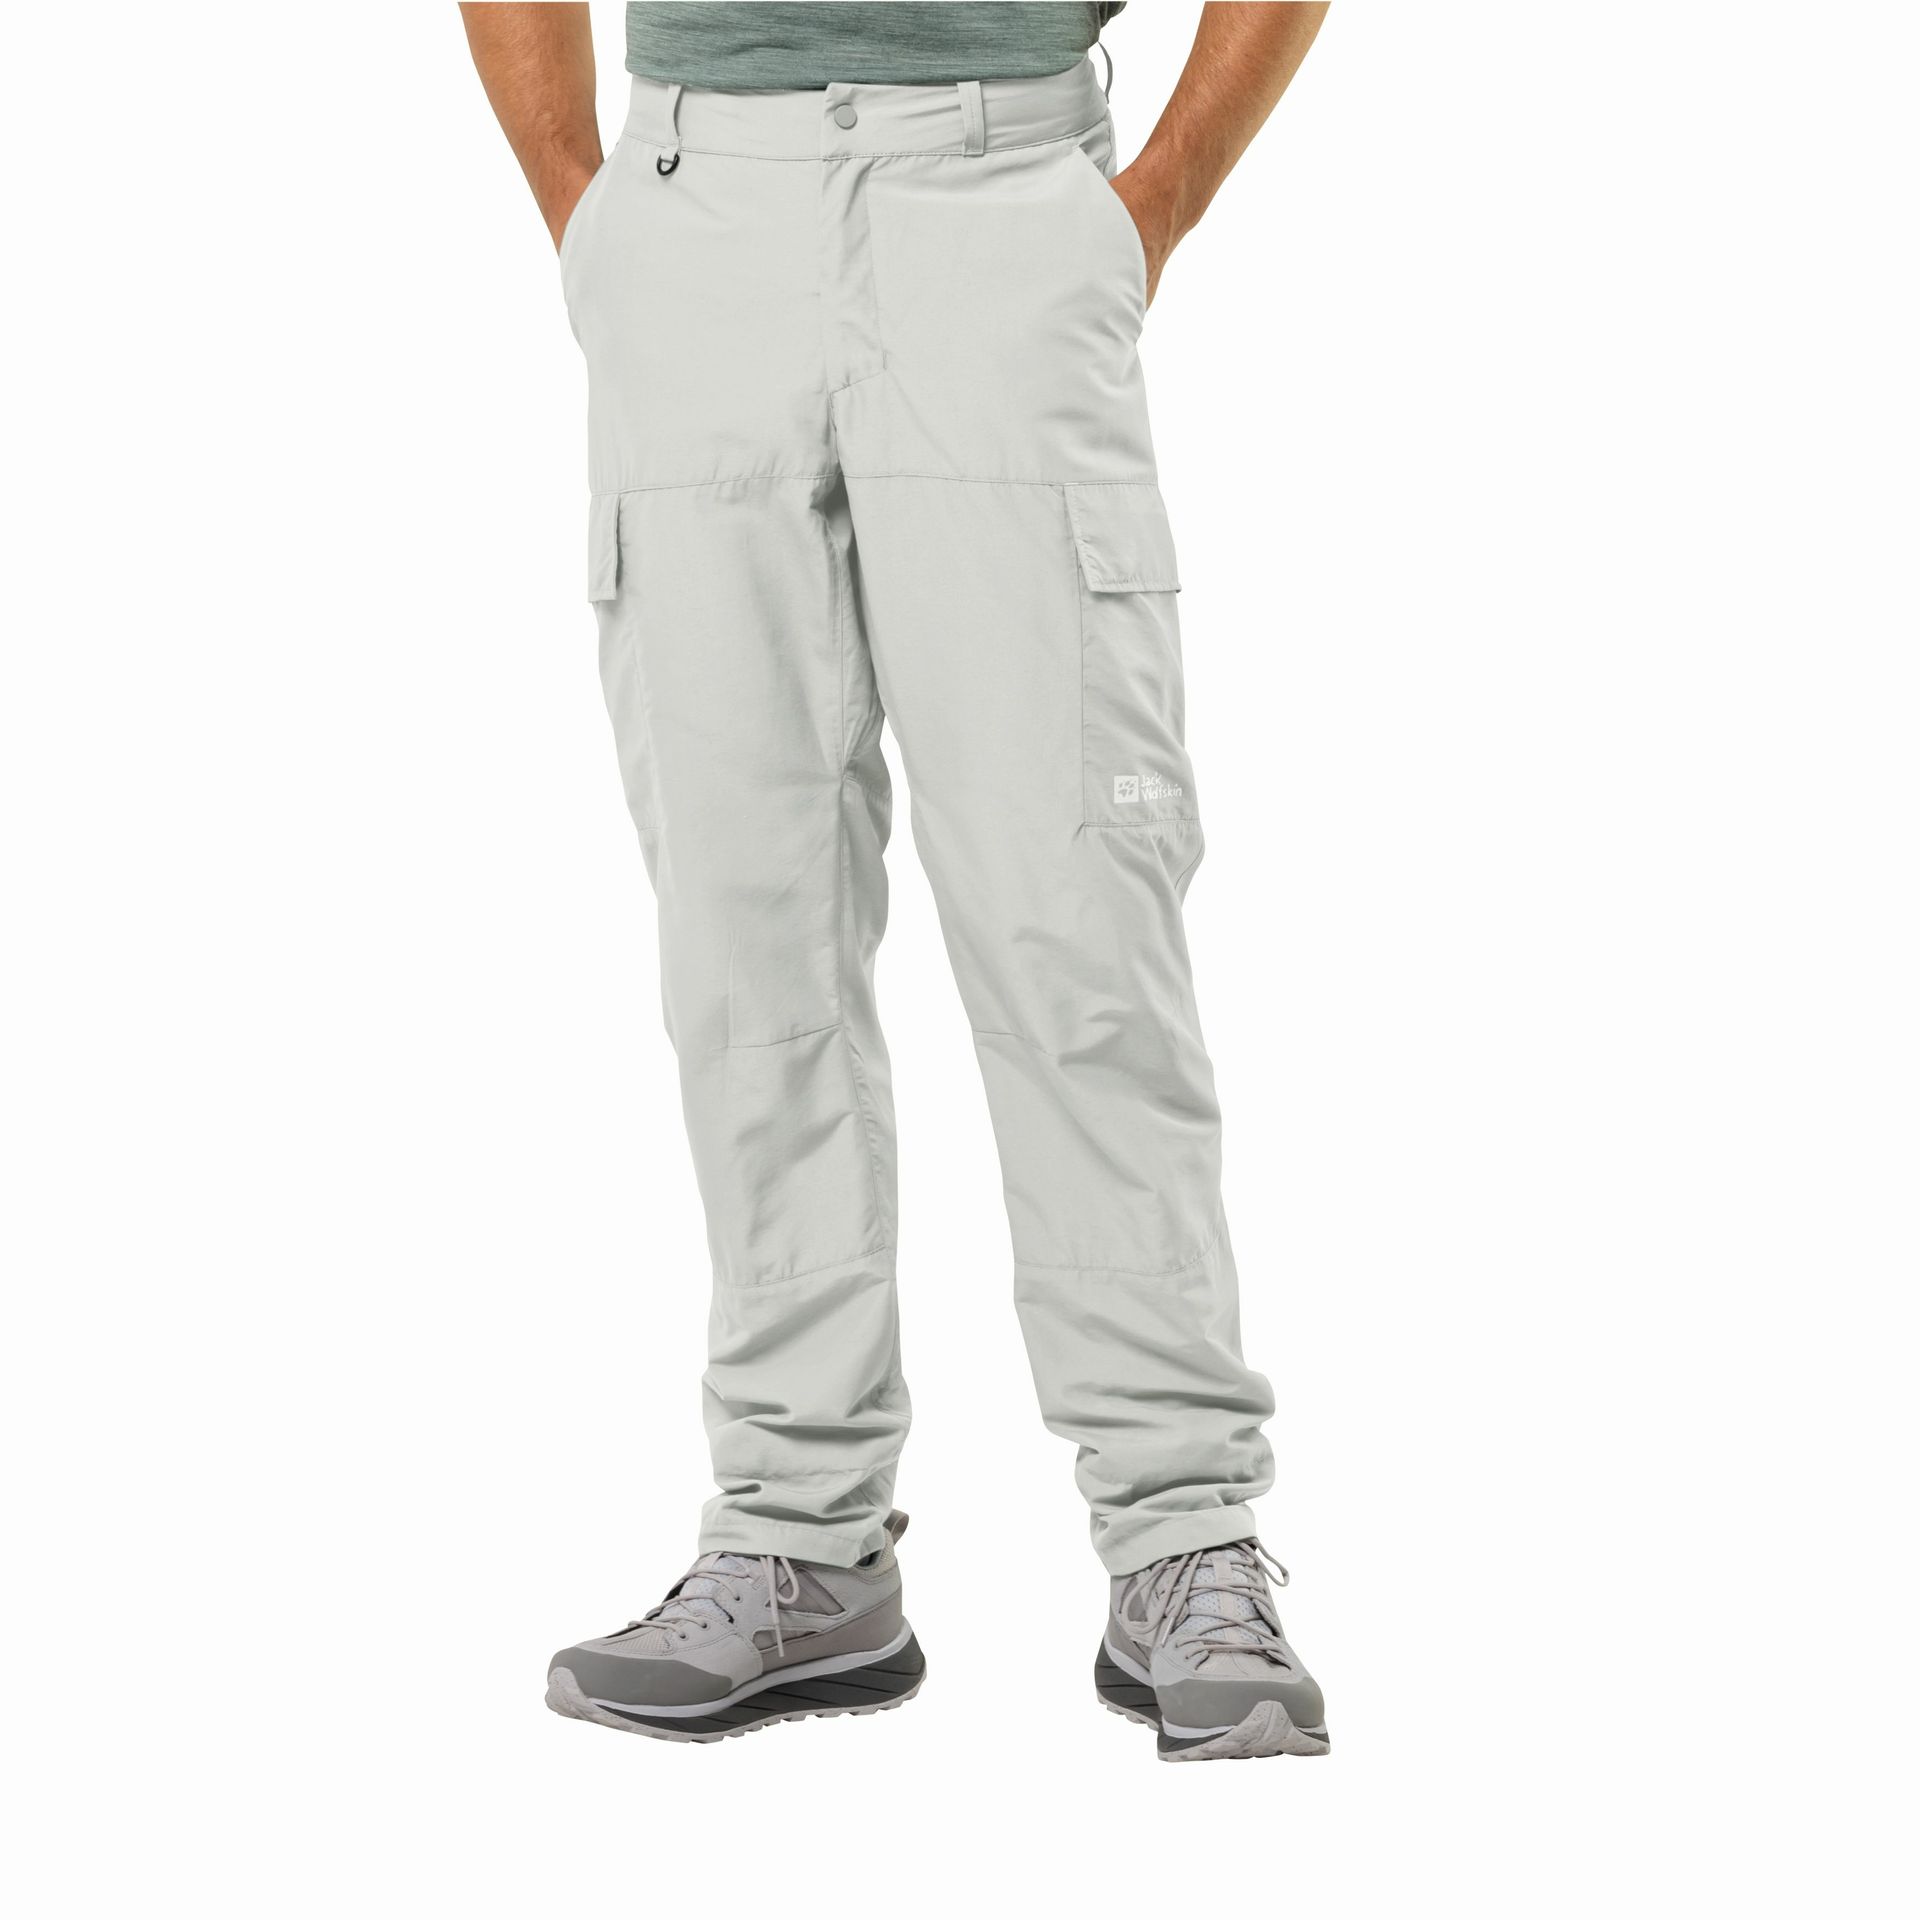 Męskie spodnie trekkingowe Jack Wolfskin BARRIER PANT M cool grey - 54